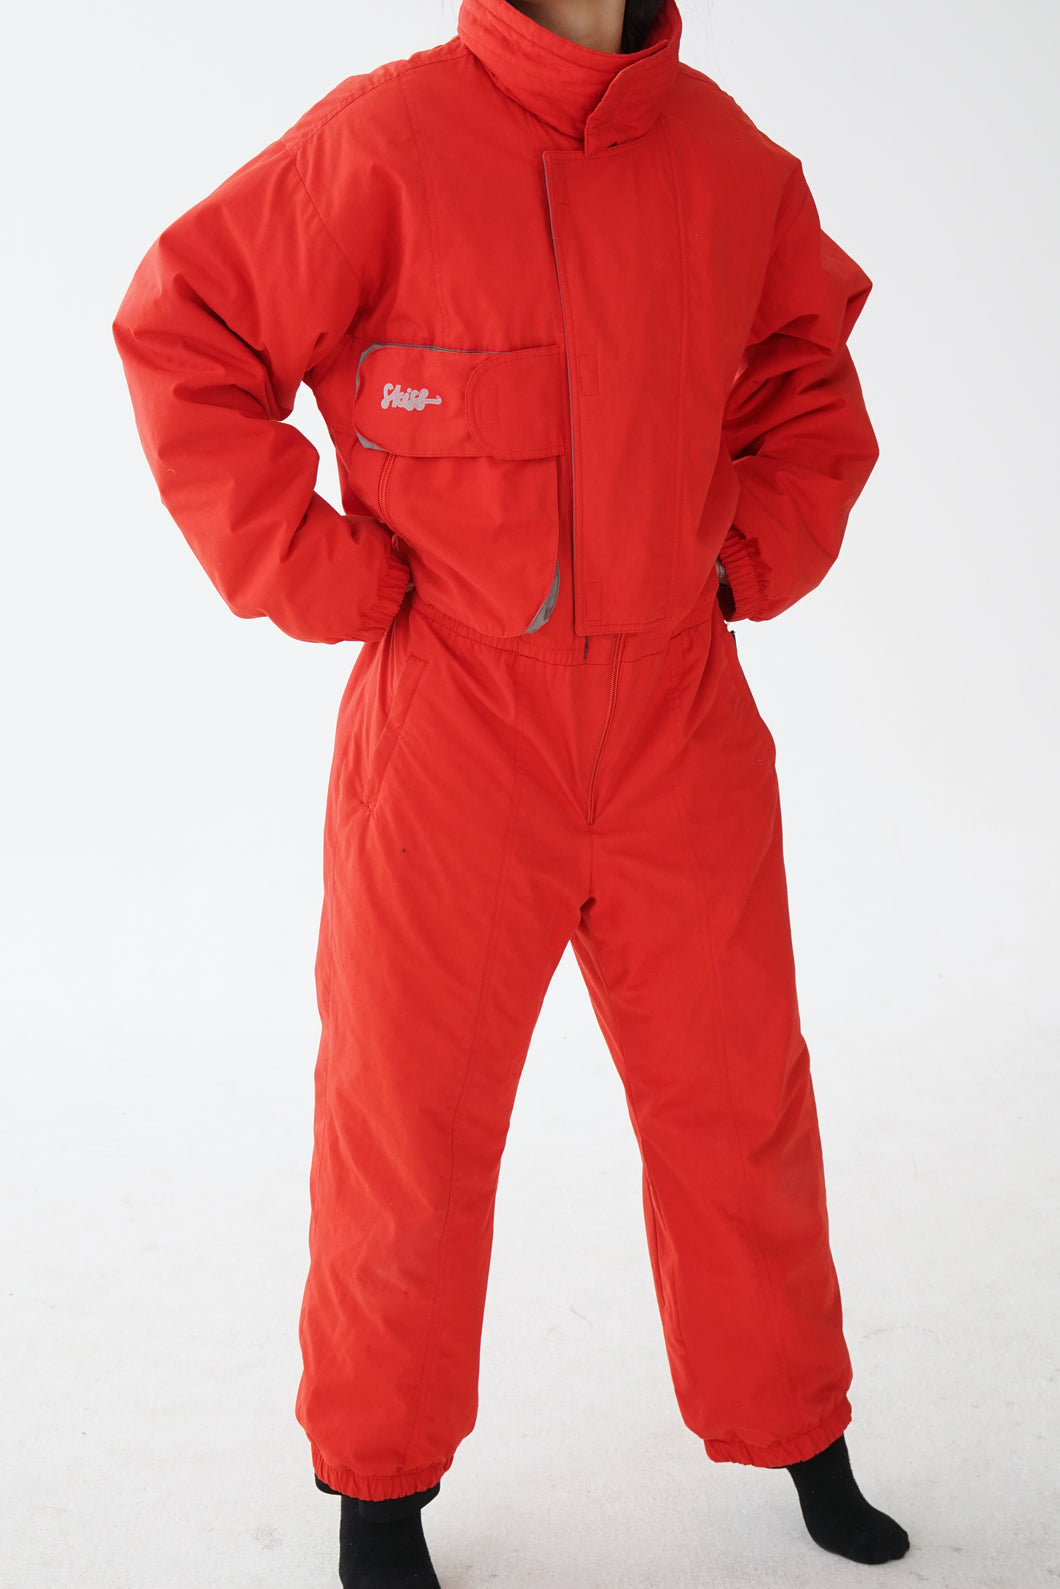 One piece Skiss ski suit, snow suit rouge pour homme taille L-XL